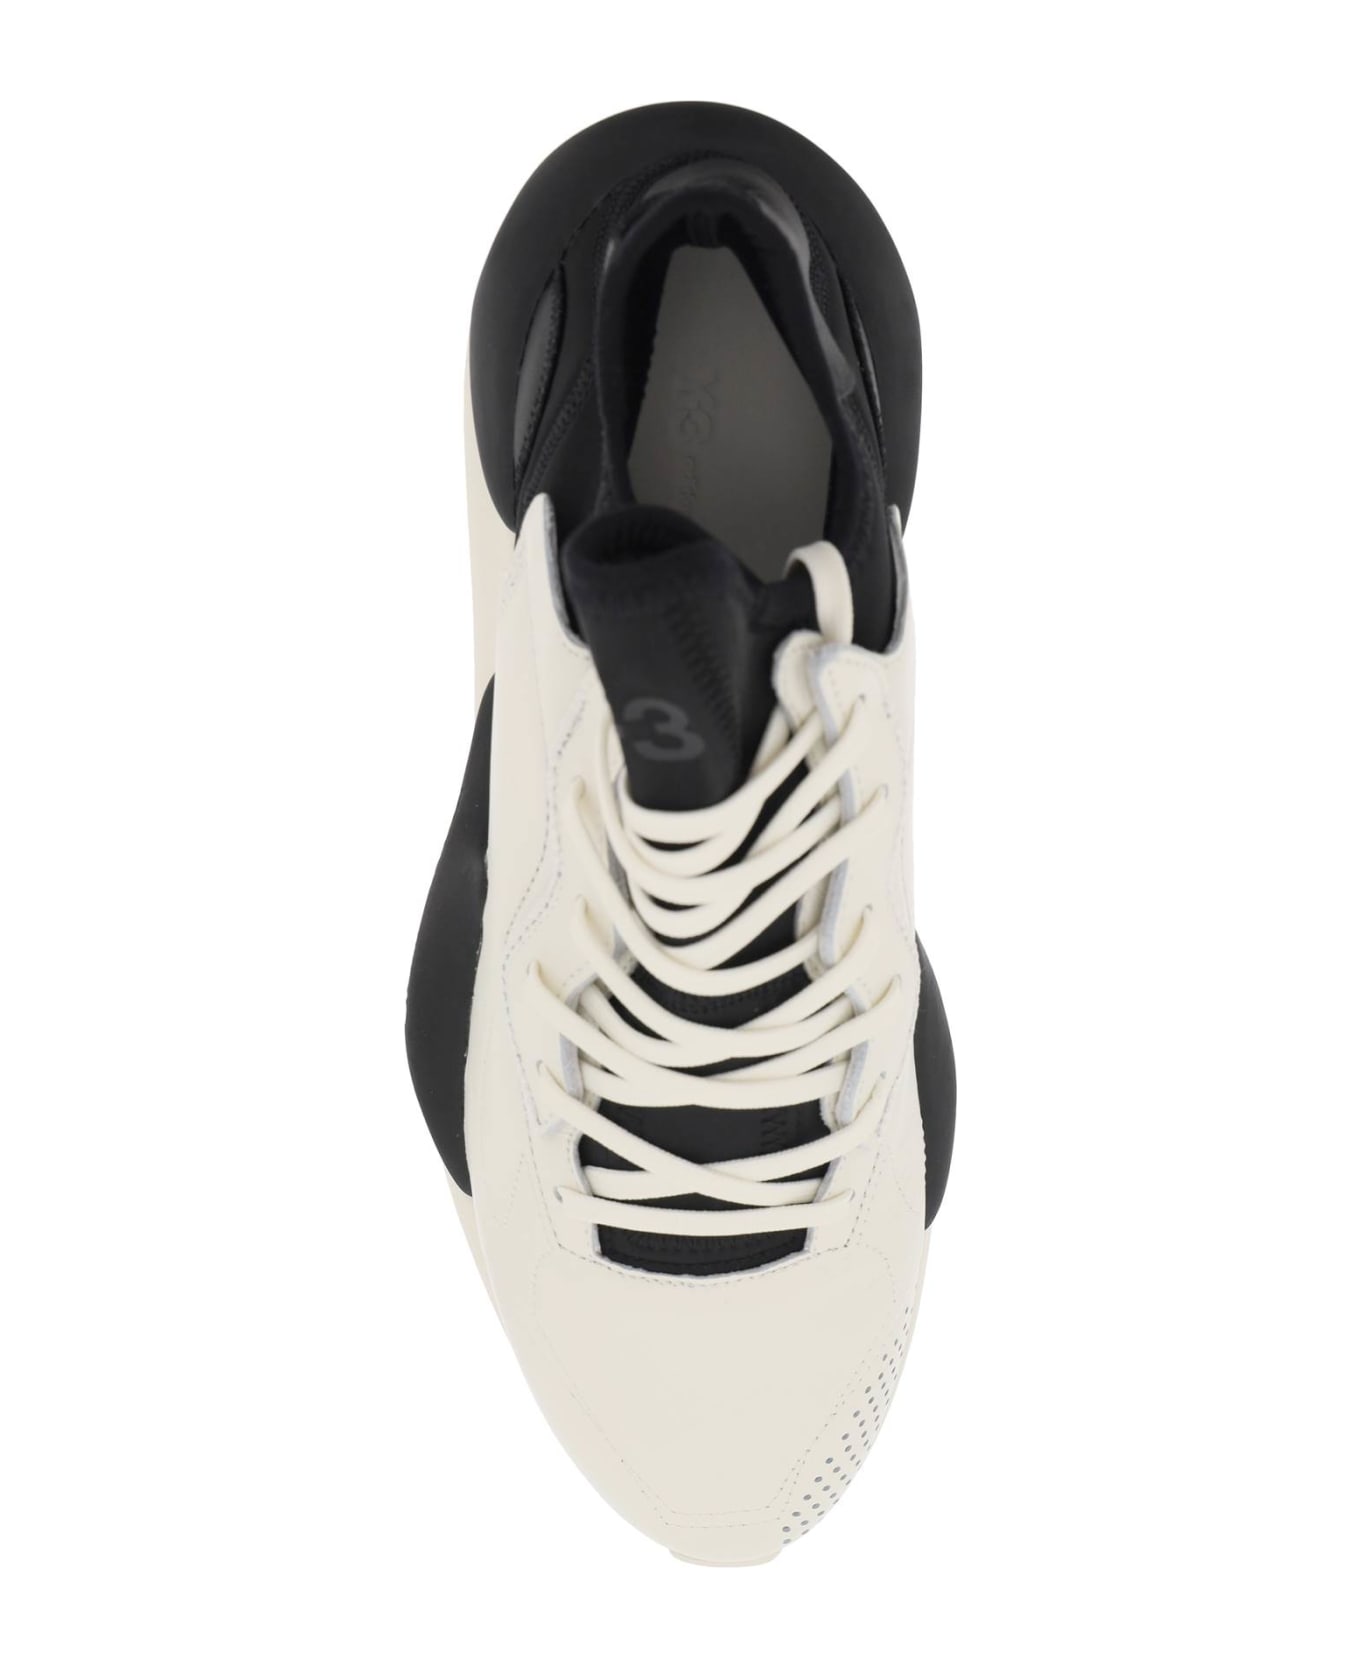 Y-3 'kaiwa' White Leather Sneakers - White